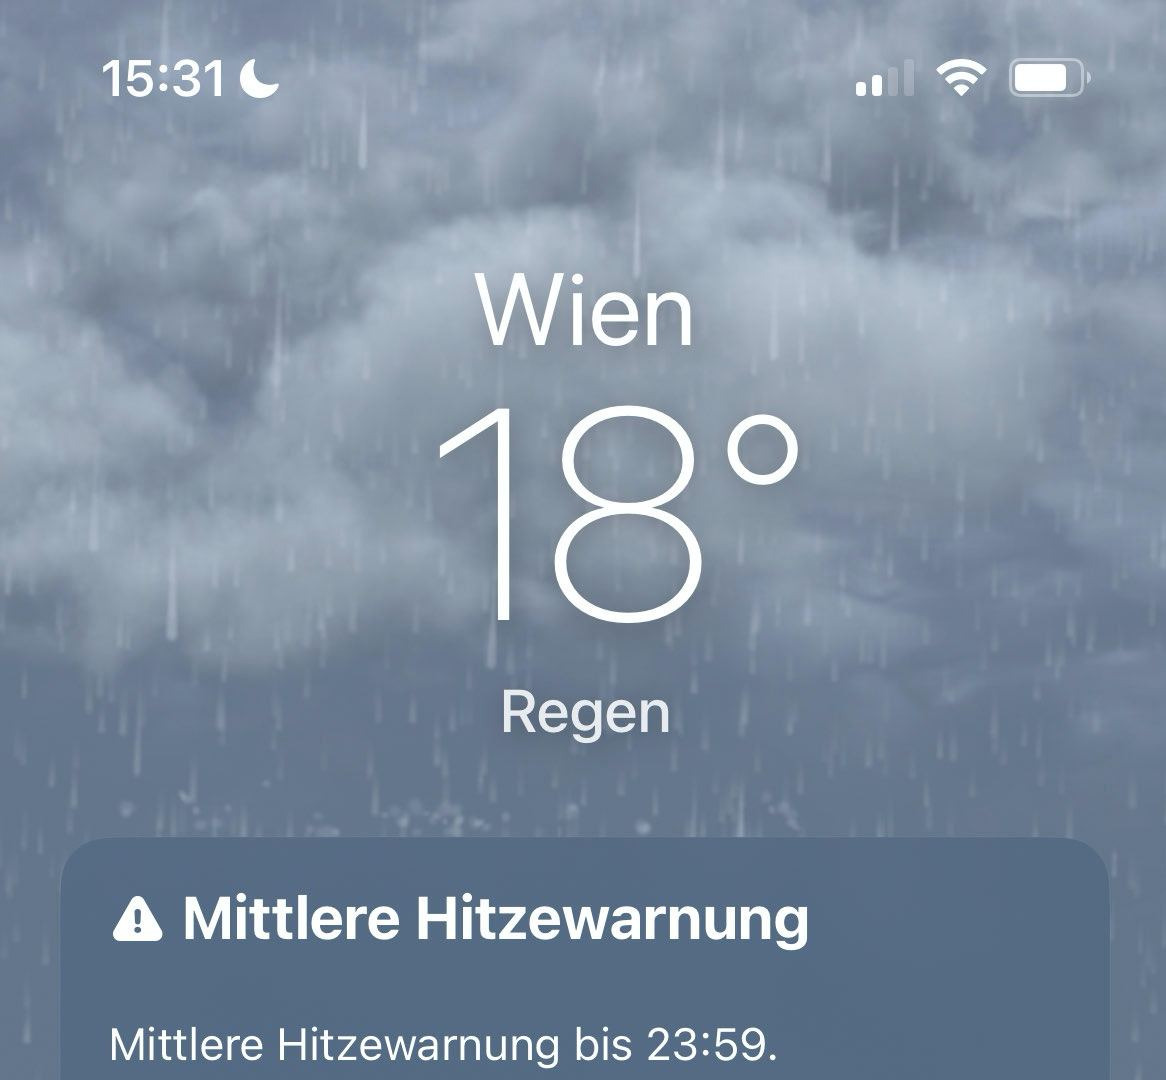 Absurdia sääpropagandaa : Wien, sade, 18 astetta, merkitty hengen ja omaisuuden vaaraksi